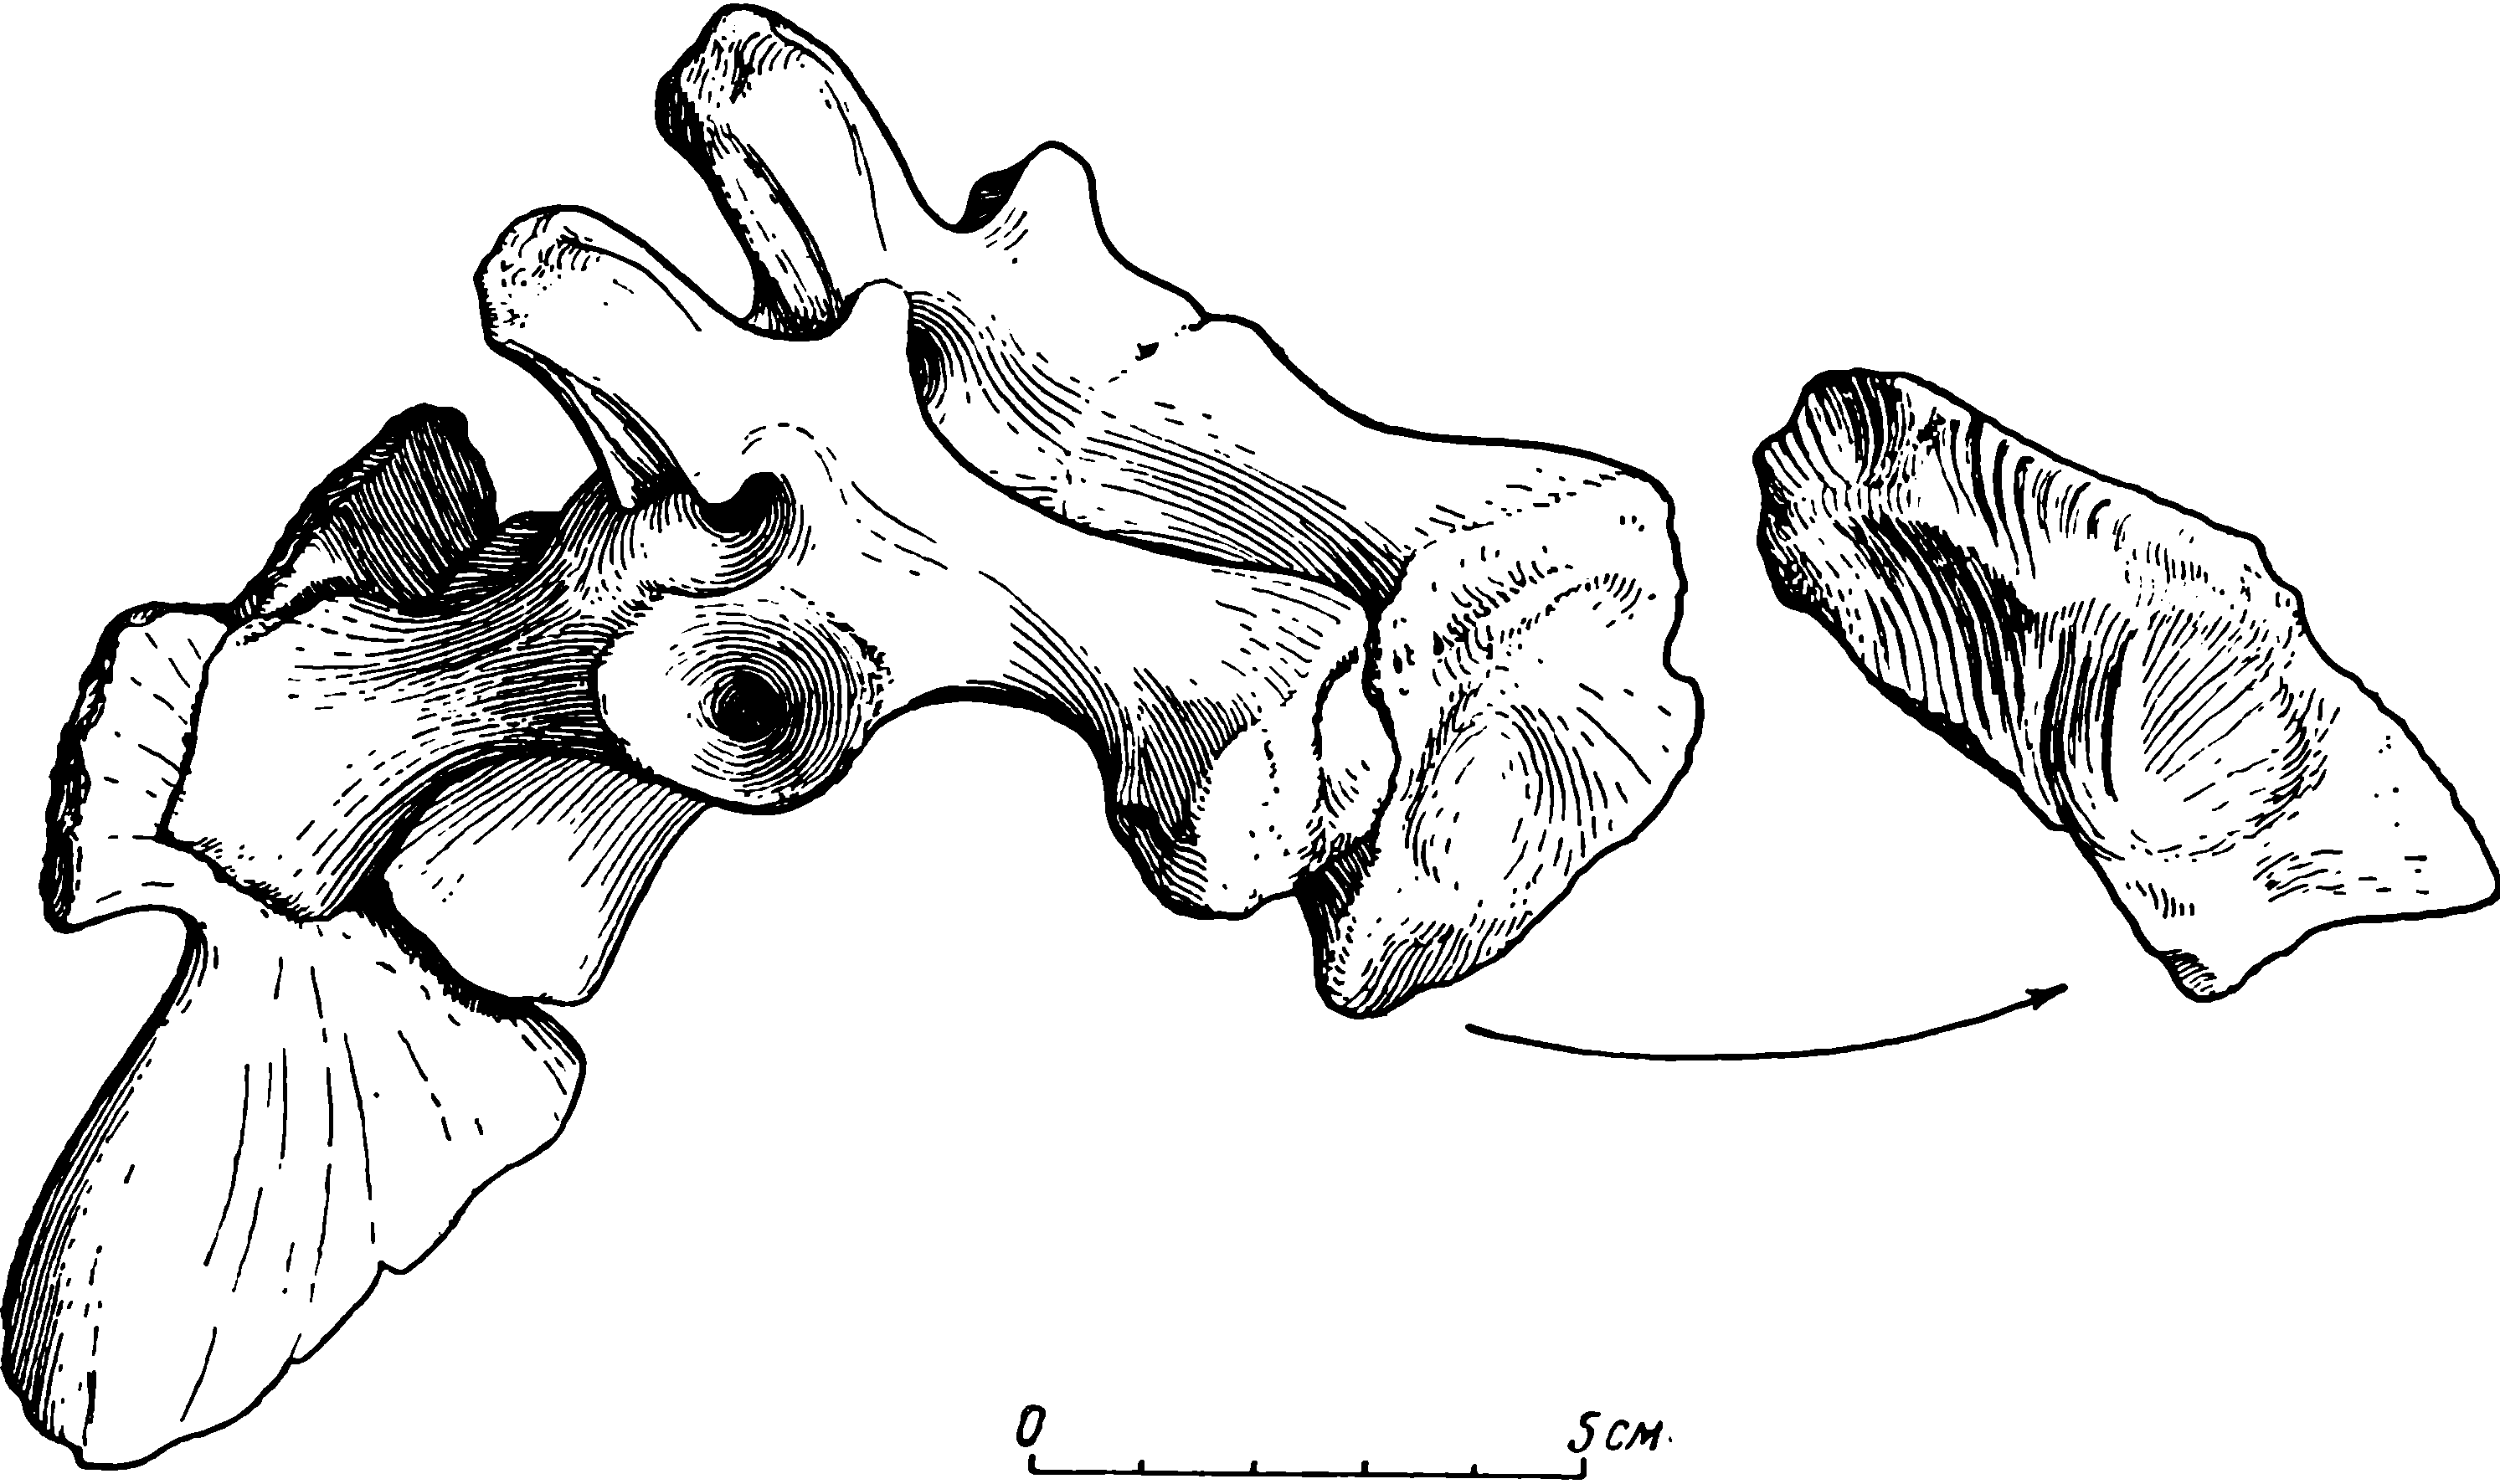 Рис. 24. Deuterosaurus biarmicus Eichw. Крестец с обеими подвздошными костями, ЛГМ/ЧМП № 11, вид сзади и сбоку. Верхняя пластинка правого ilium отъединена и показана с внутренней стороны